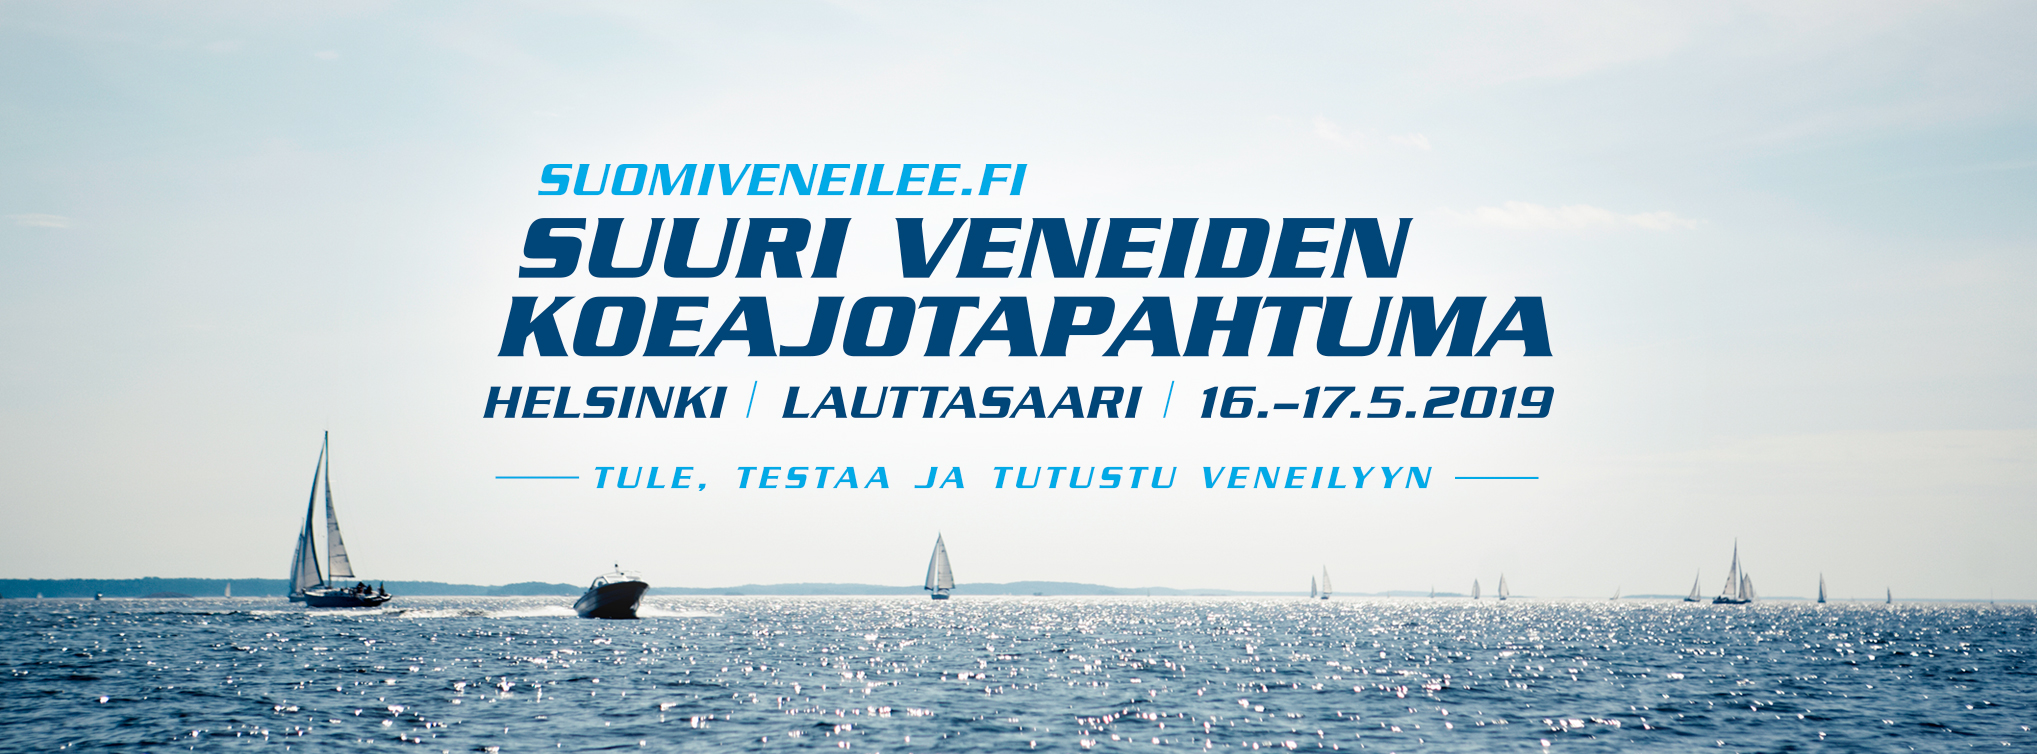 suomiveneilee.fi Helsingin Lauttasaaressa 16.–17.5.2019